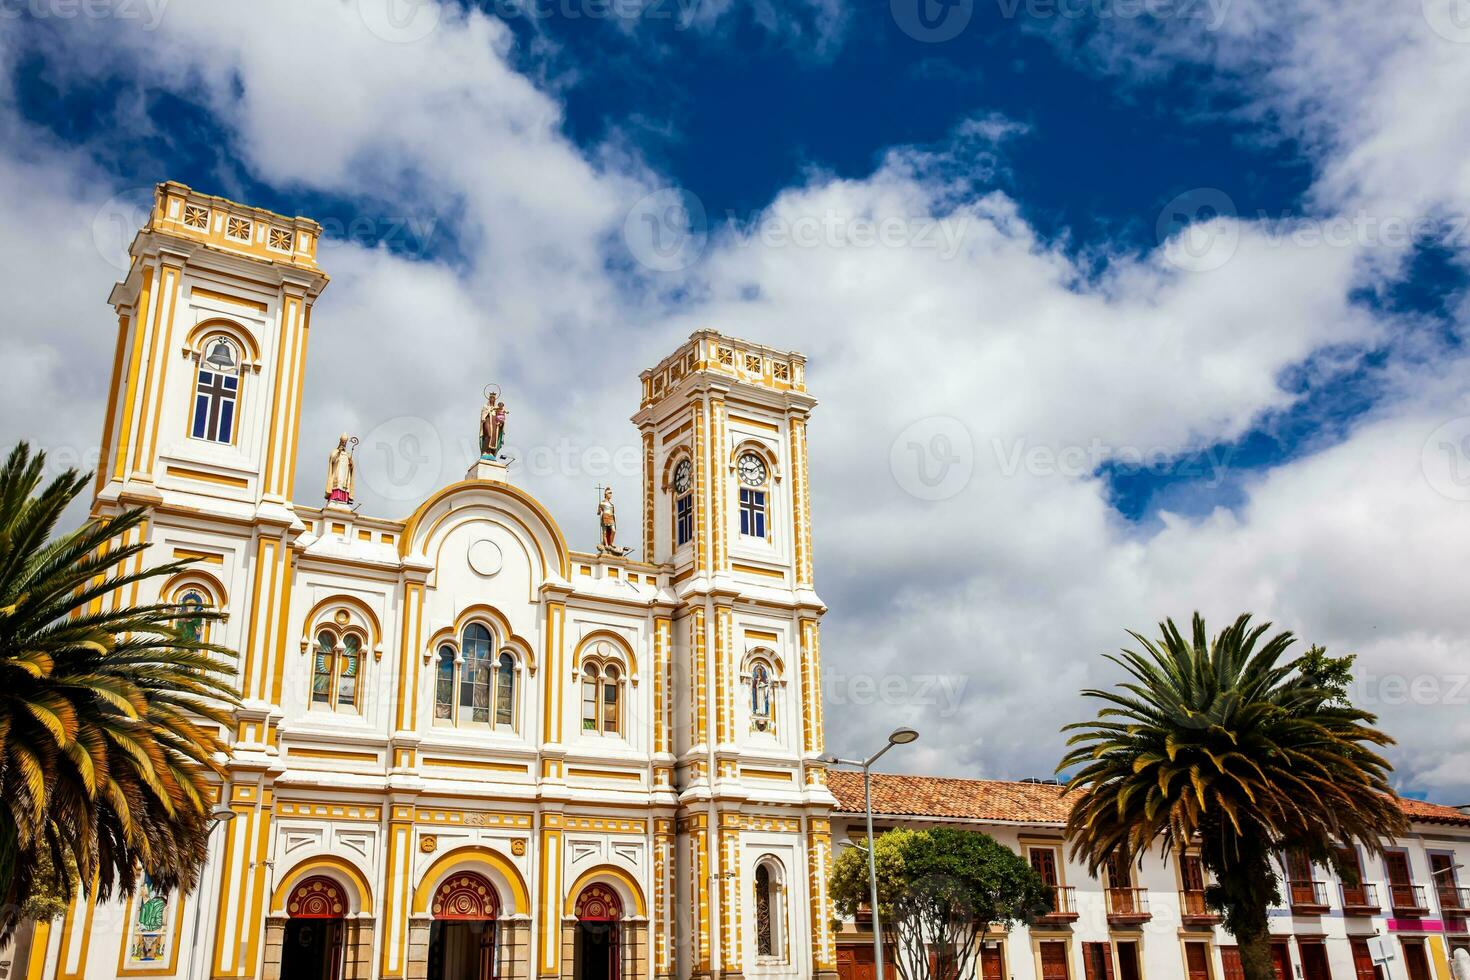 San Martin de Tours Cathedral located at the Sogamoso city central square called Plaza de la Villa photo